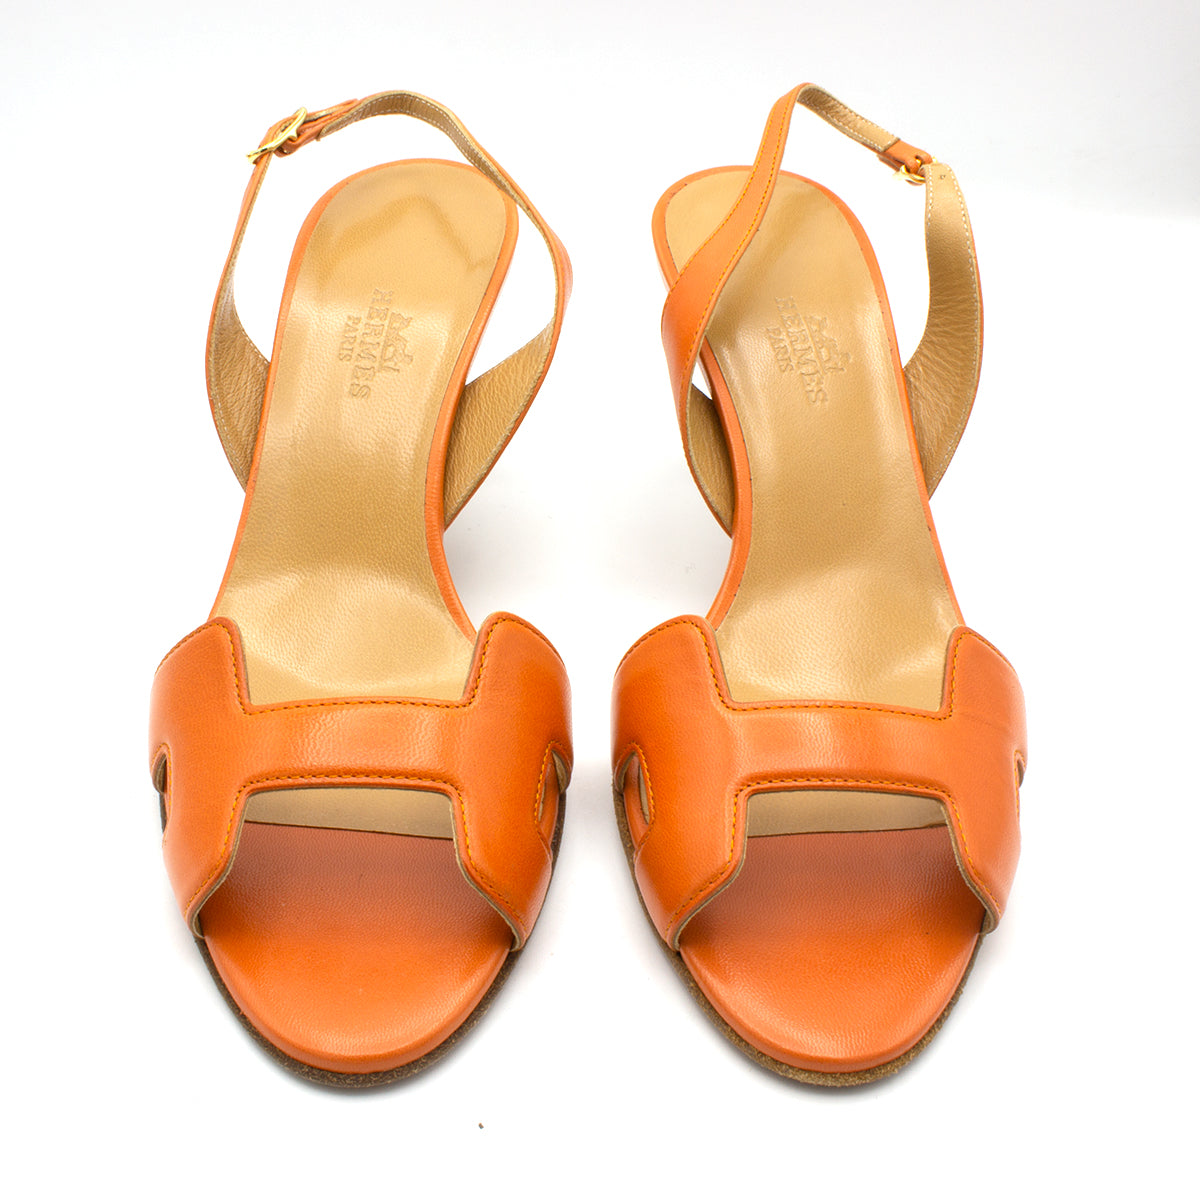 Hermes sandals orange shoes - Luxe \u0026 Em